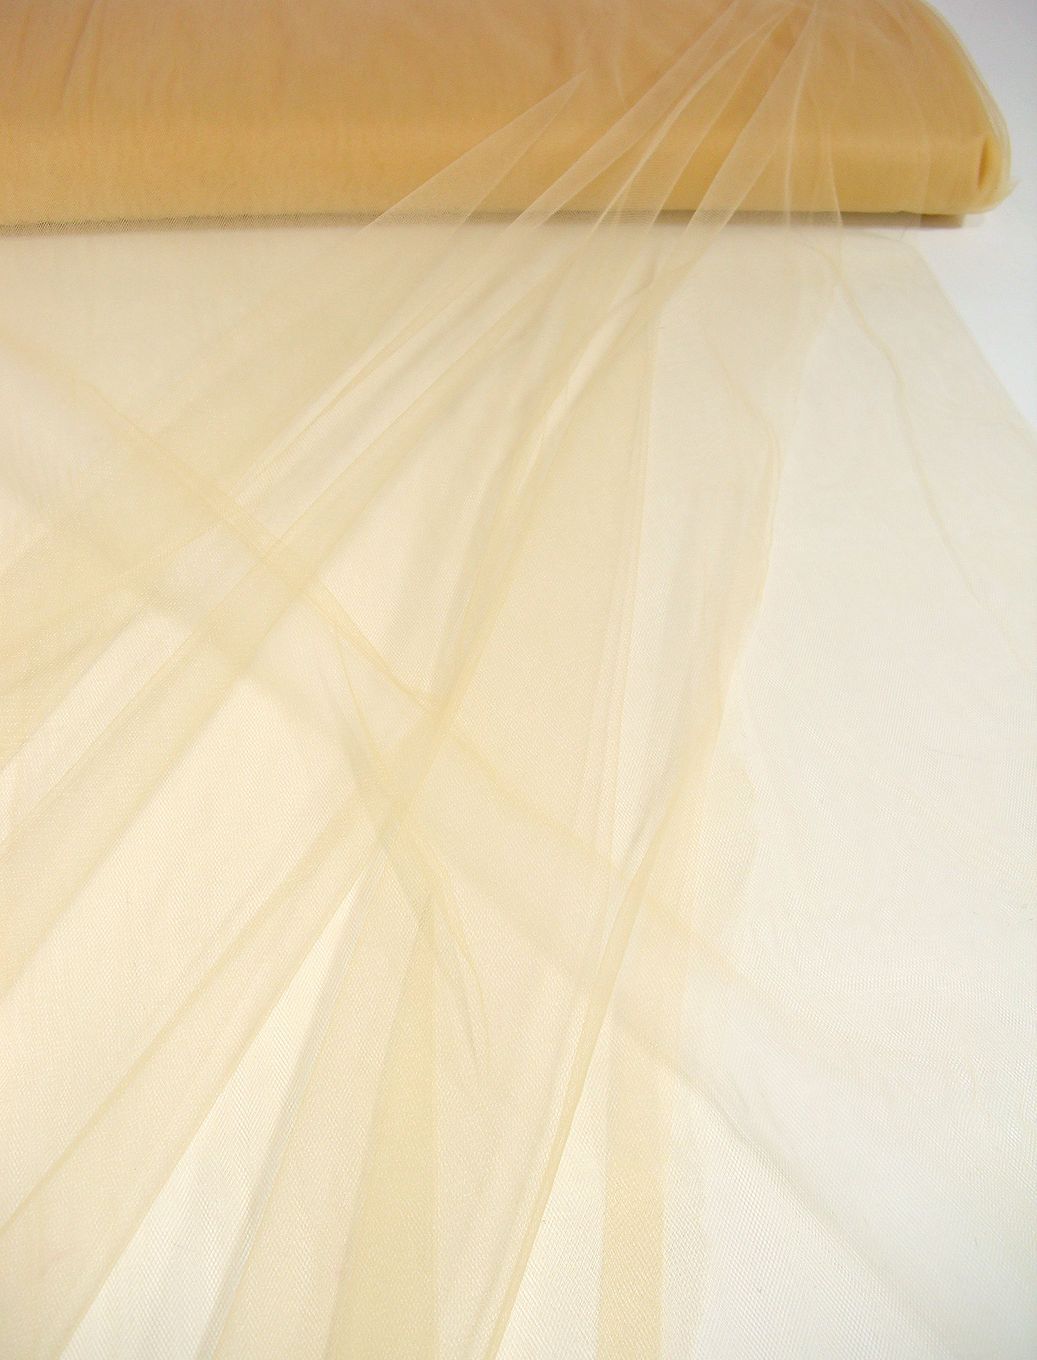 uni Tüllstoff Meterware 300cm breit für Gardine Vorhang Store Hochzeit - Sahara Beige